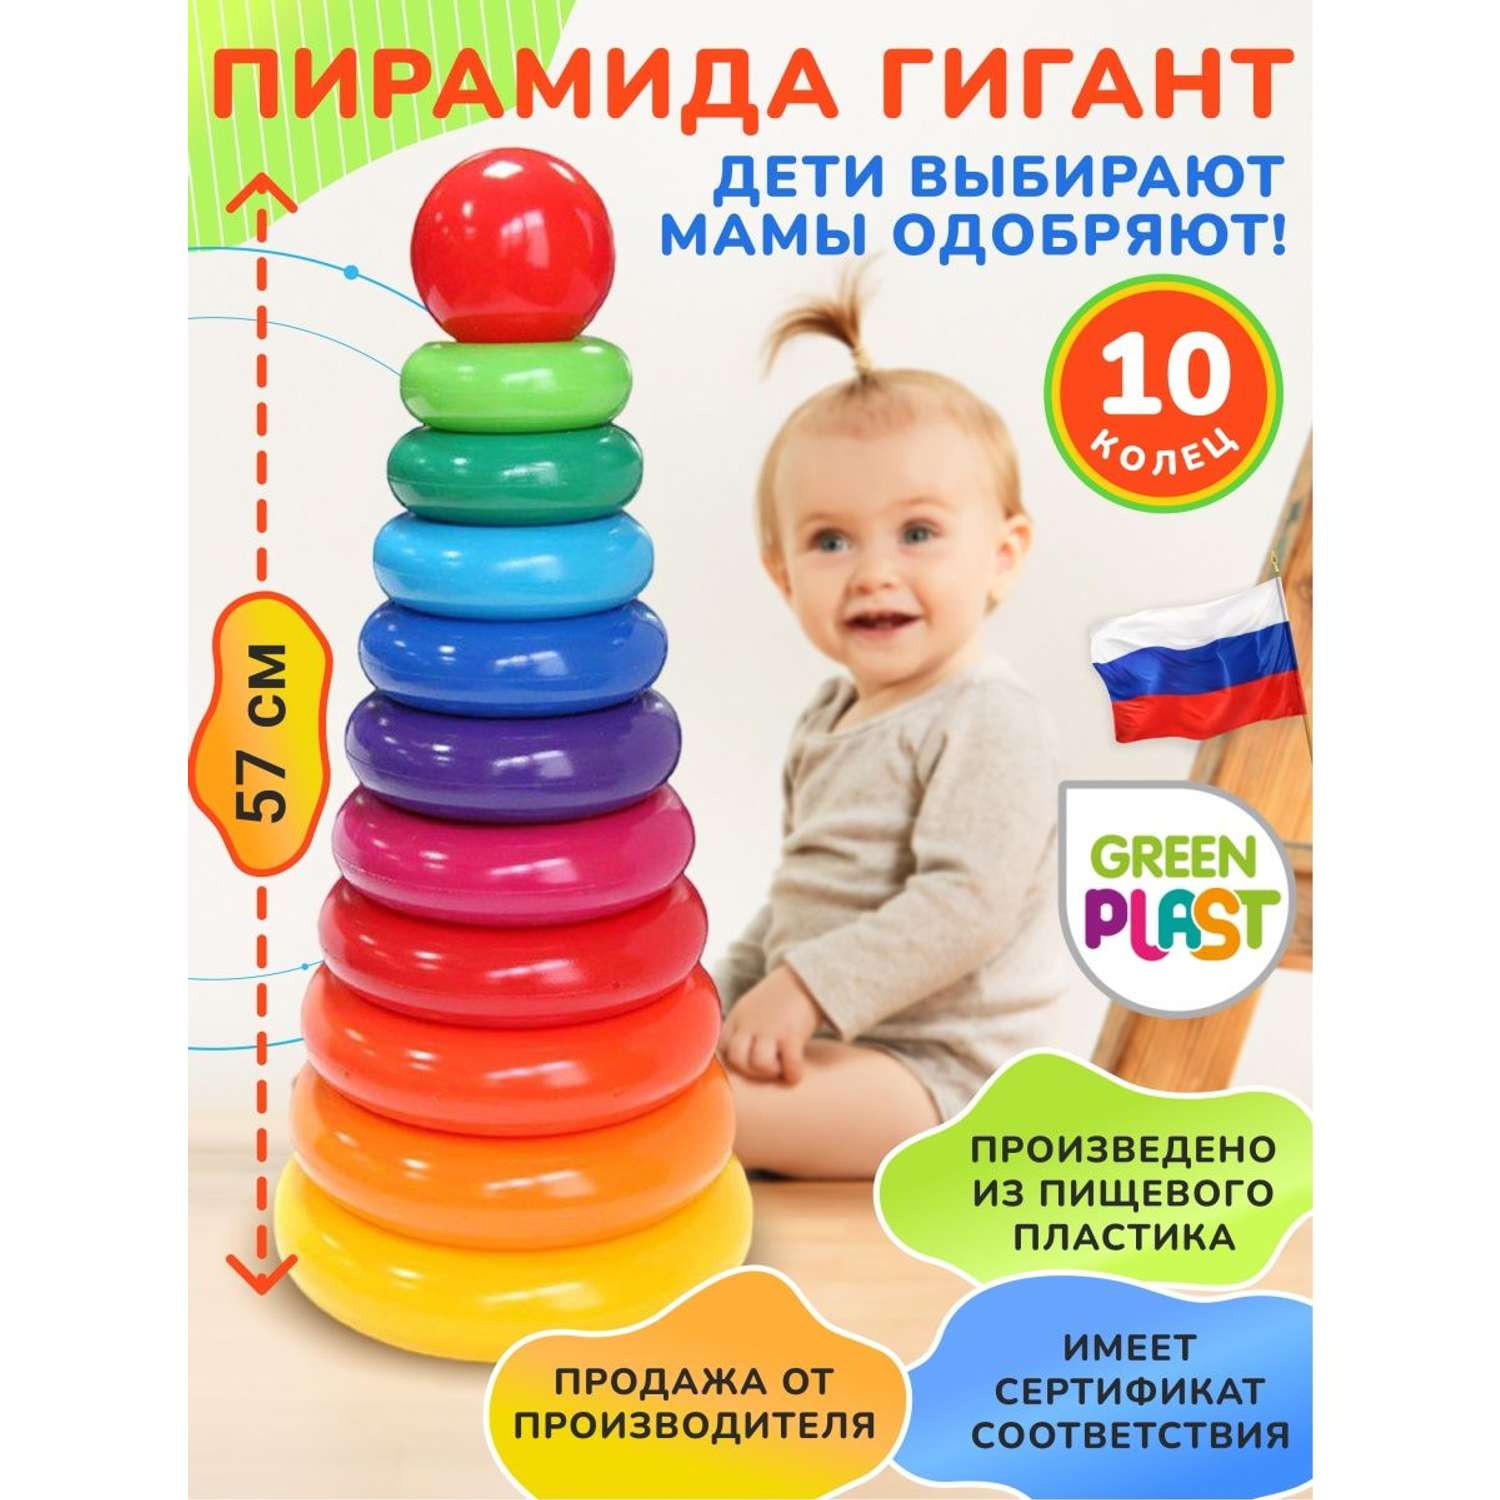 Пирамидка детская Green Plast Гигант 10 колец высота 57см развивающая игрушка - фото 3